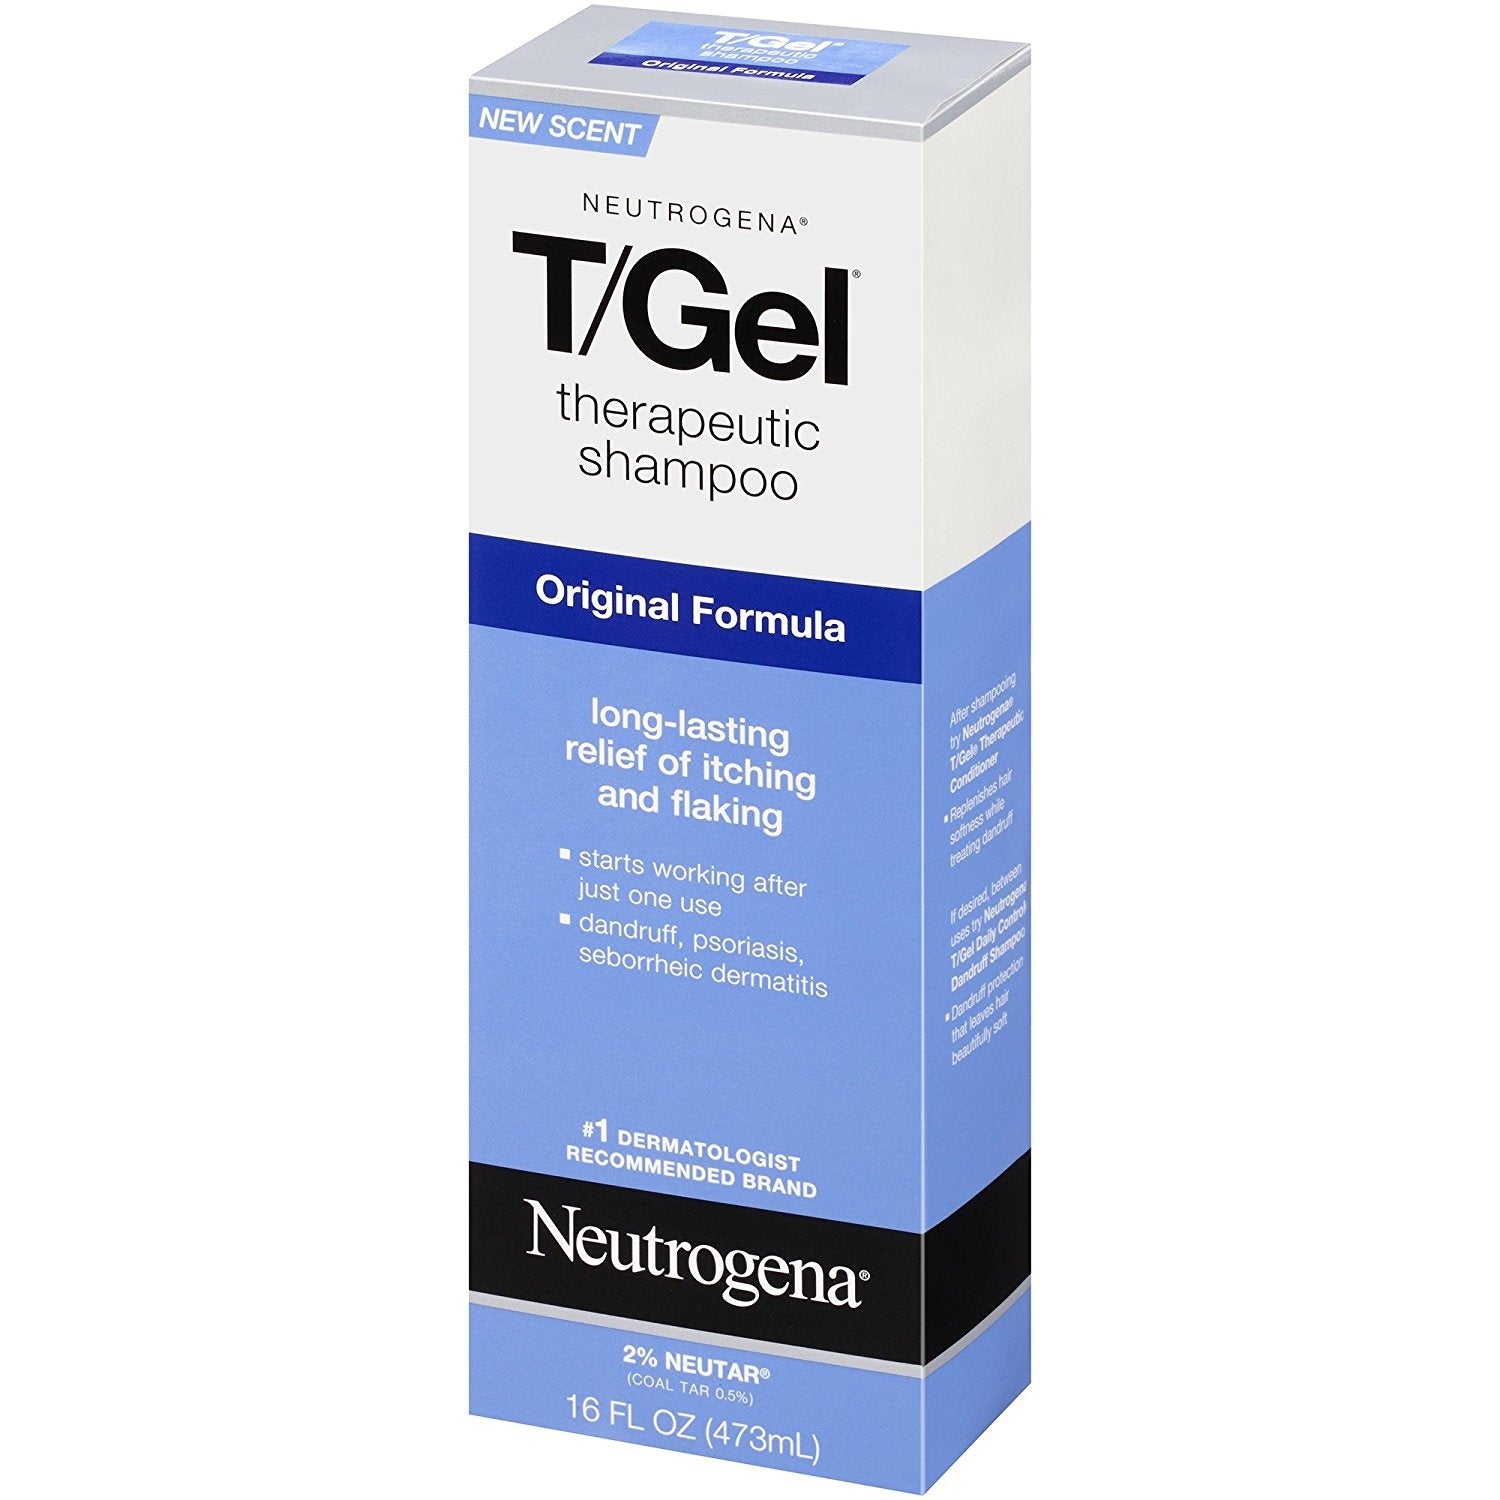 Neutrogena T/Gel Therapeutic Shampoo Original Formula, 16 Fl. Oz | MTTS257